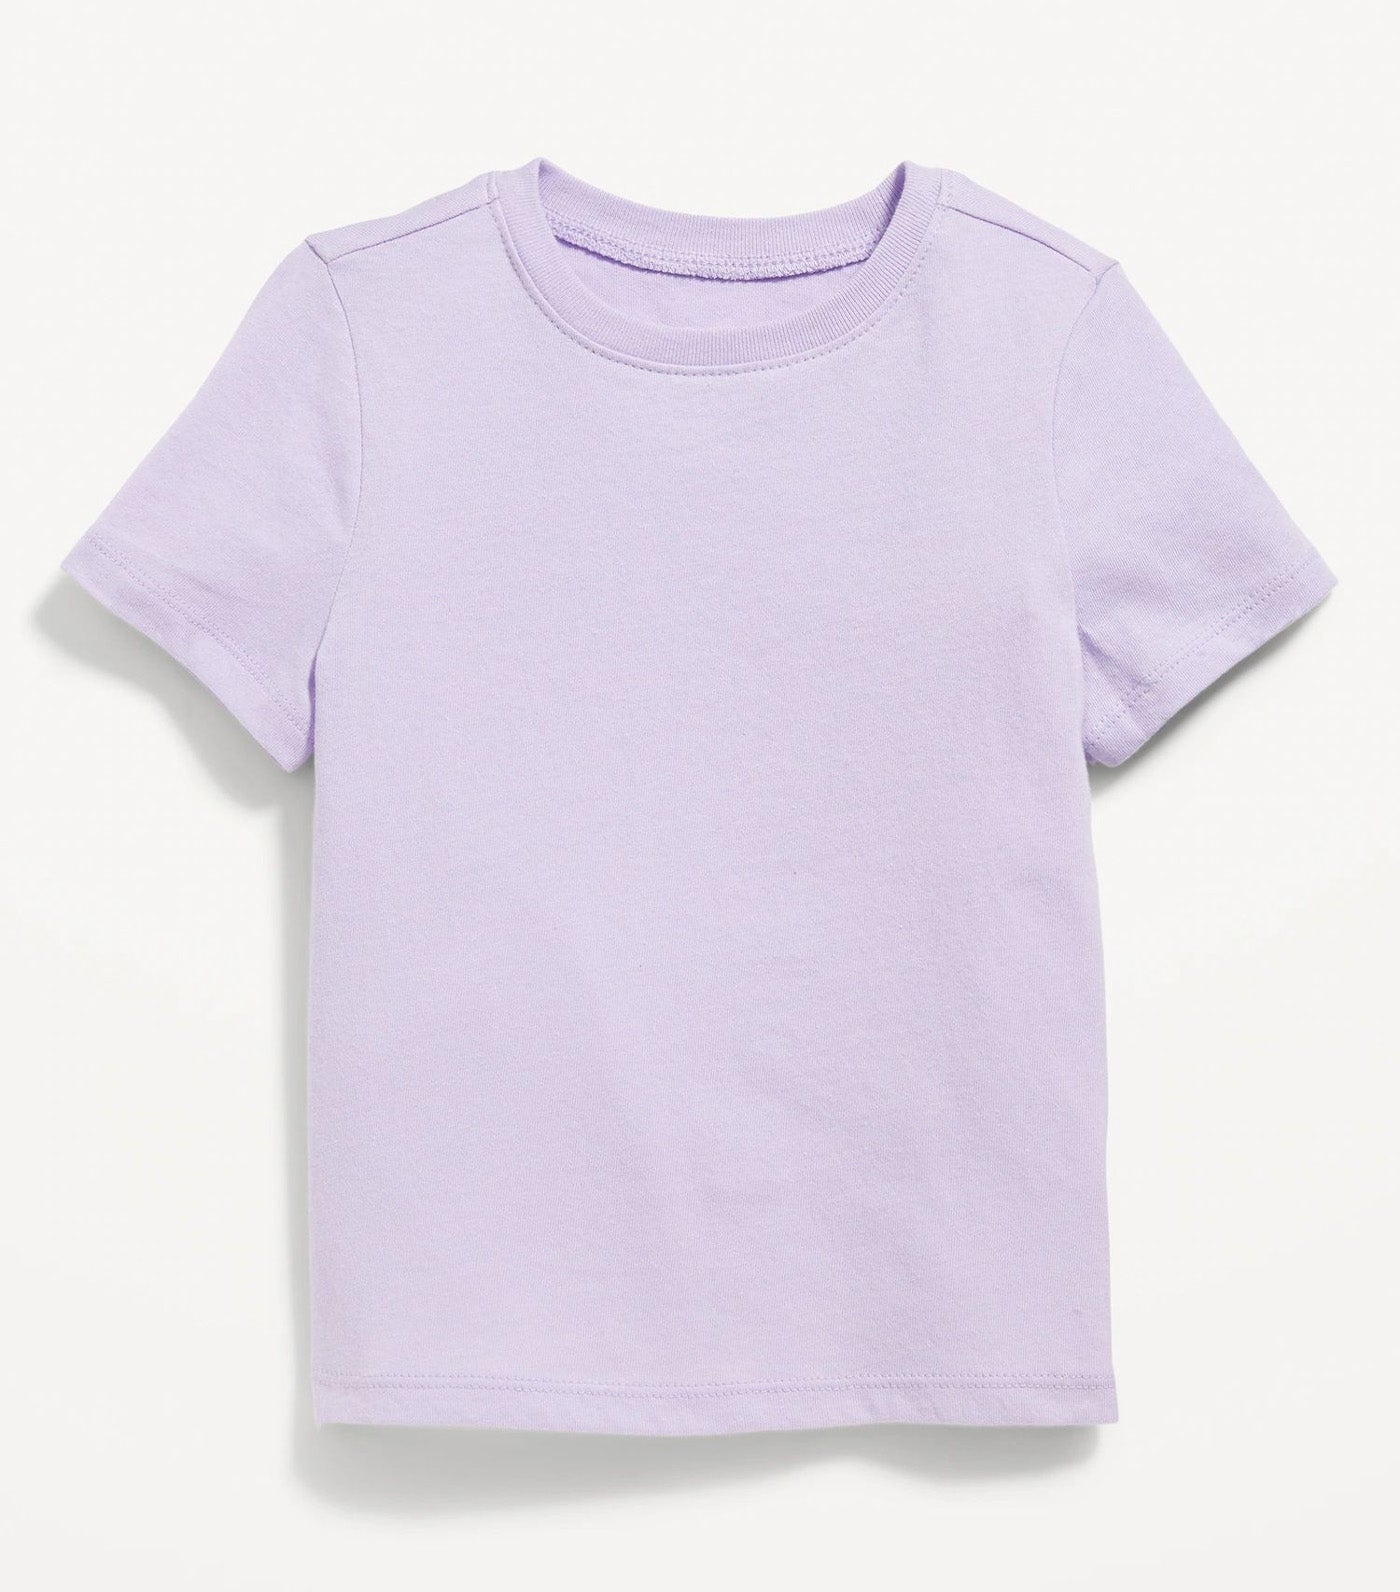 Unisex Short-Sleeve T-Shirt for Toddler - Dusky Lavender